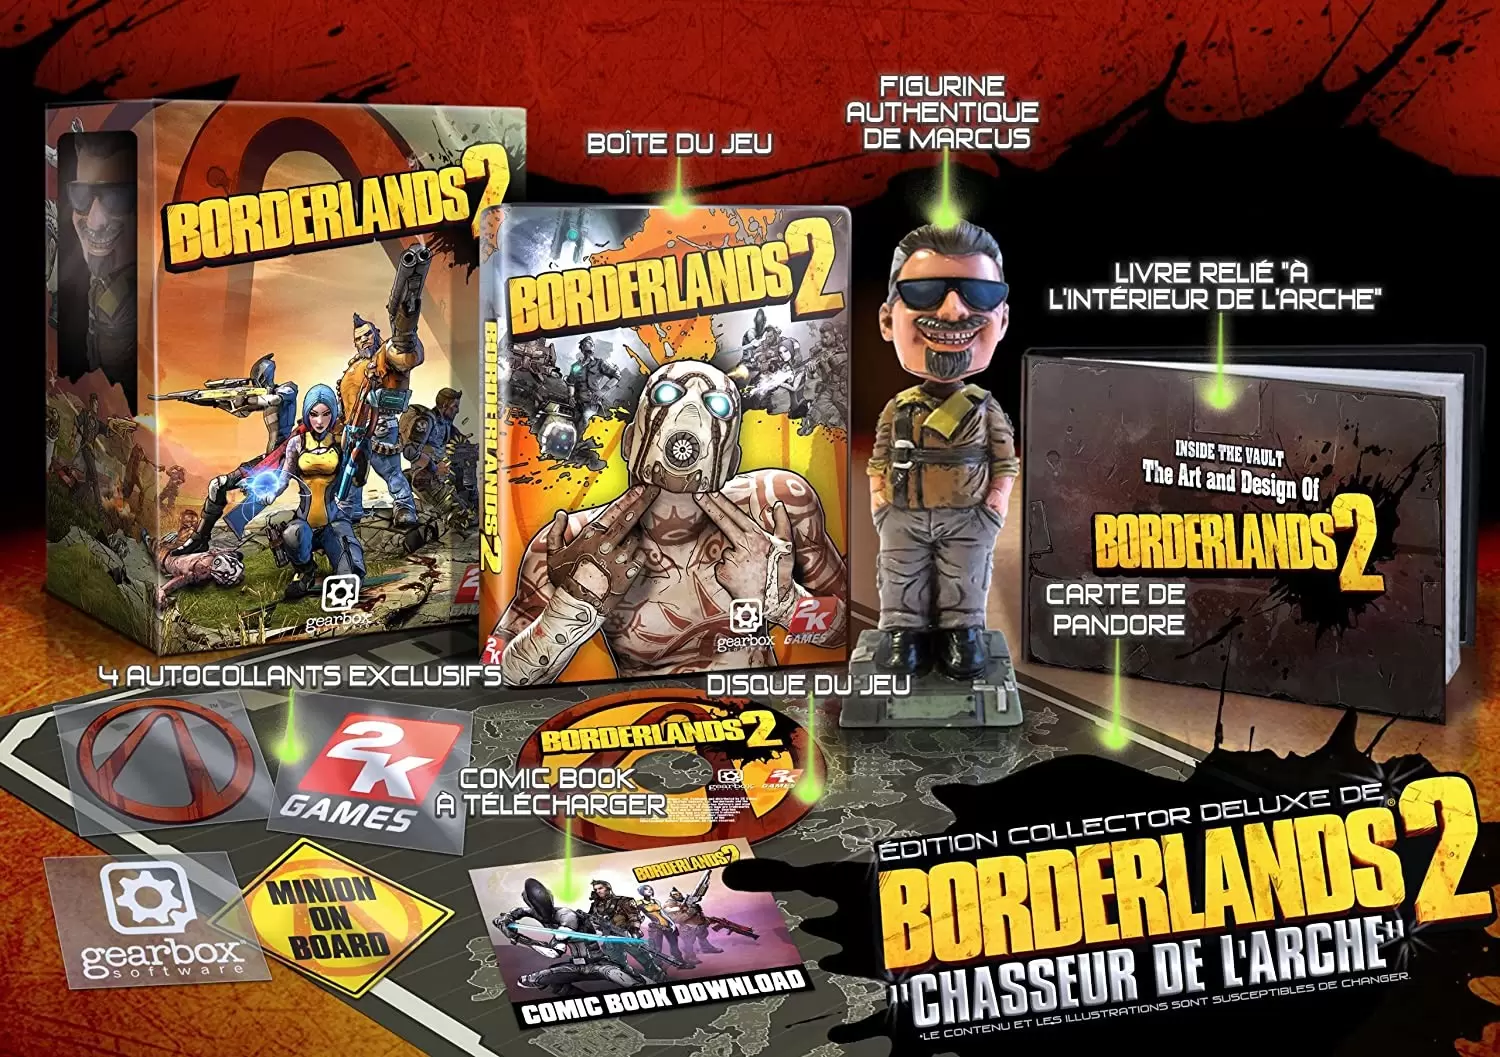 XBOX 360 Games - Borderlands 2 : Le Chasseur De L\' Arche - Edition Collector